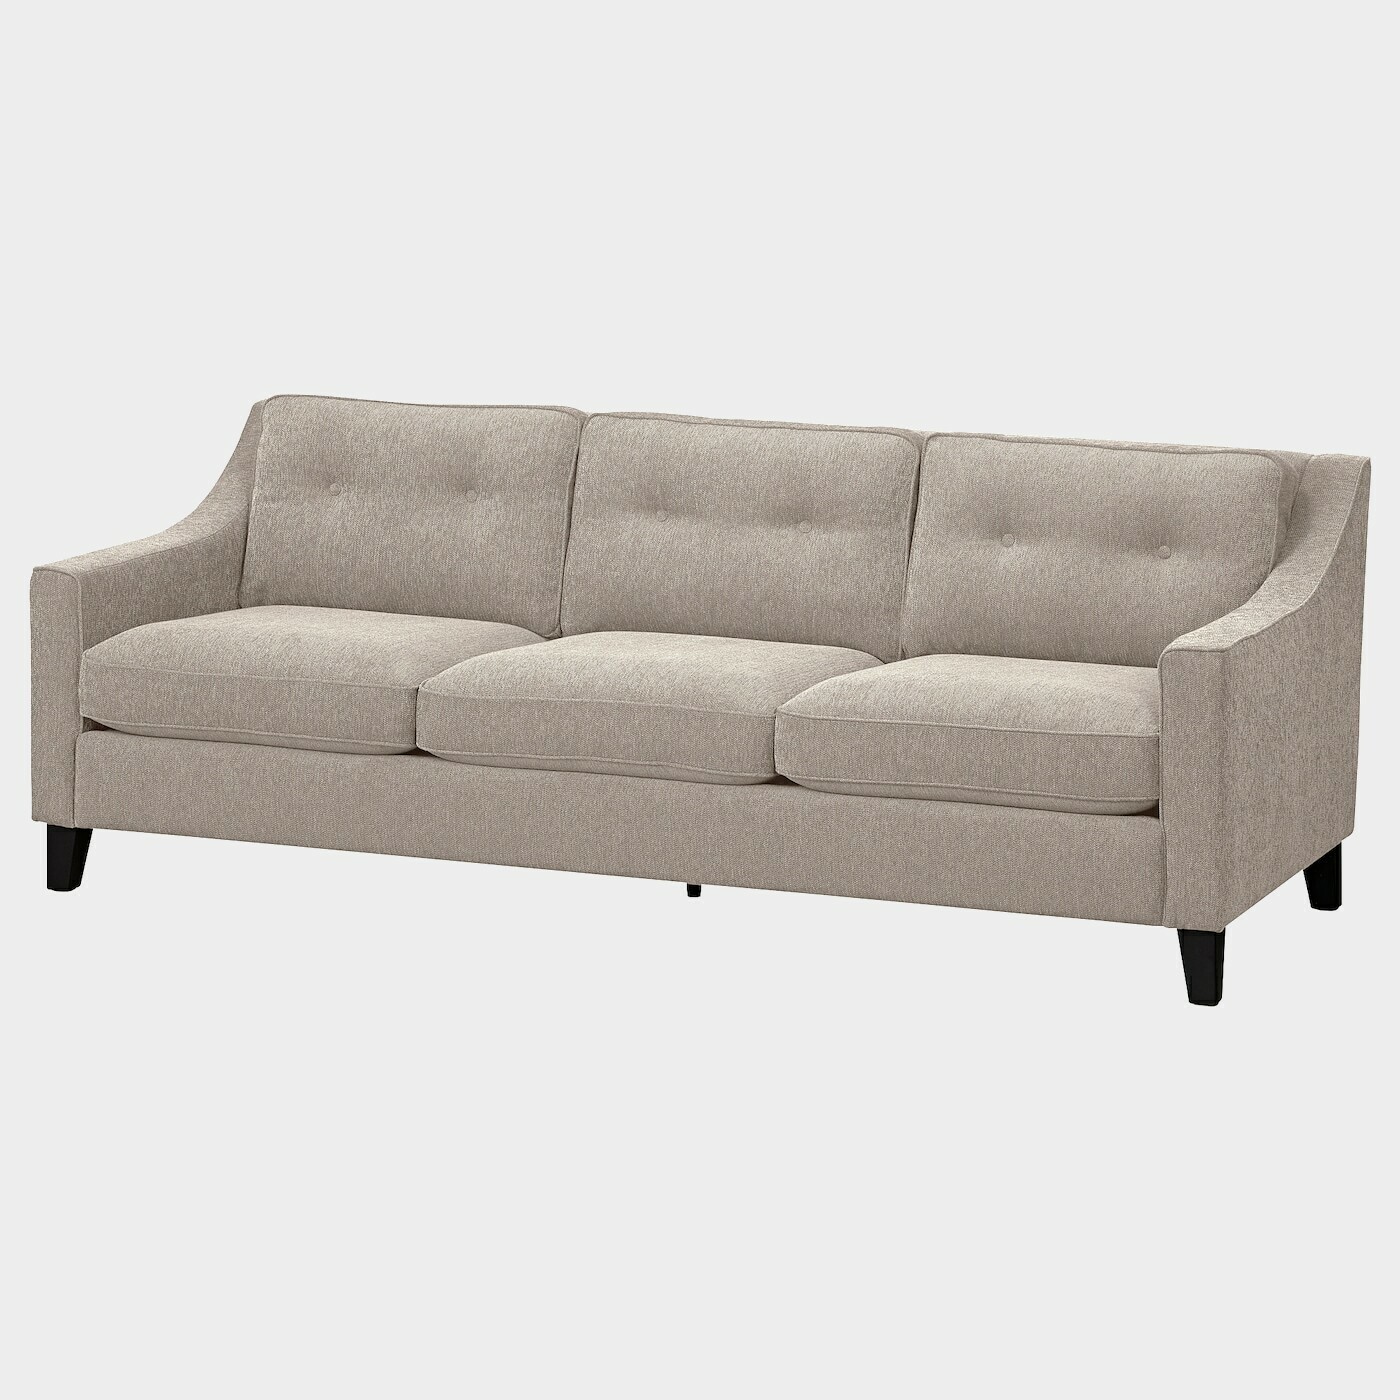 FRÖSLÖV 3er-Sofa  -  - Möbel Ideen für dein Zuhause von Home Trends. Möbel Trends von Social Media Influencer für dein Skandi Zuhause.